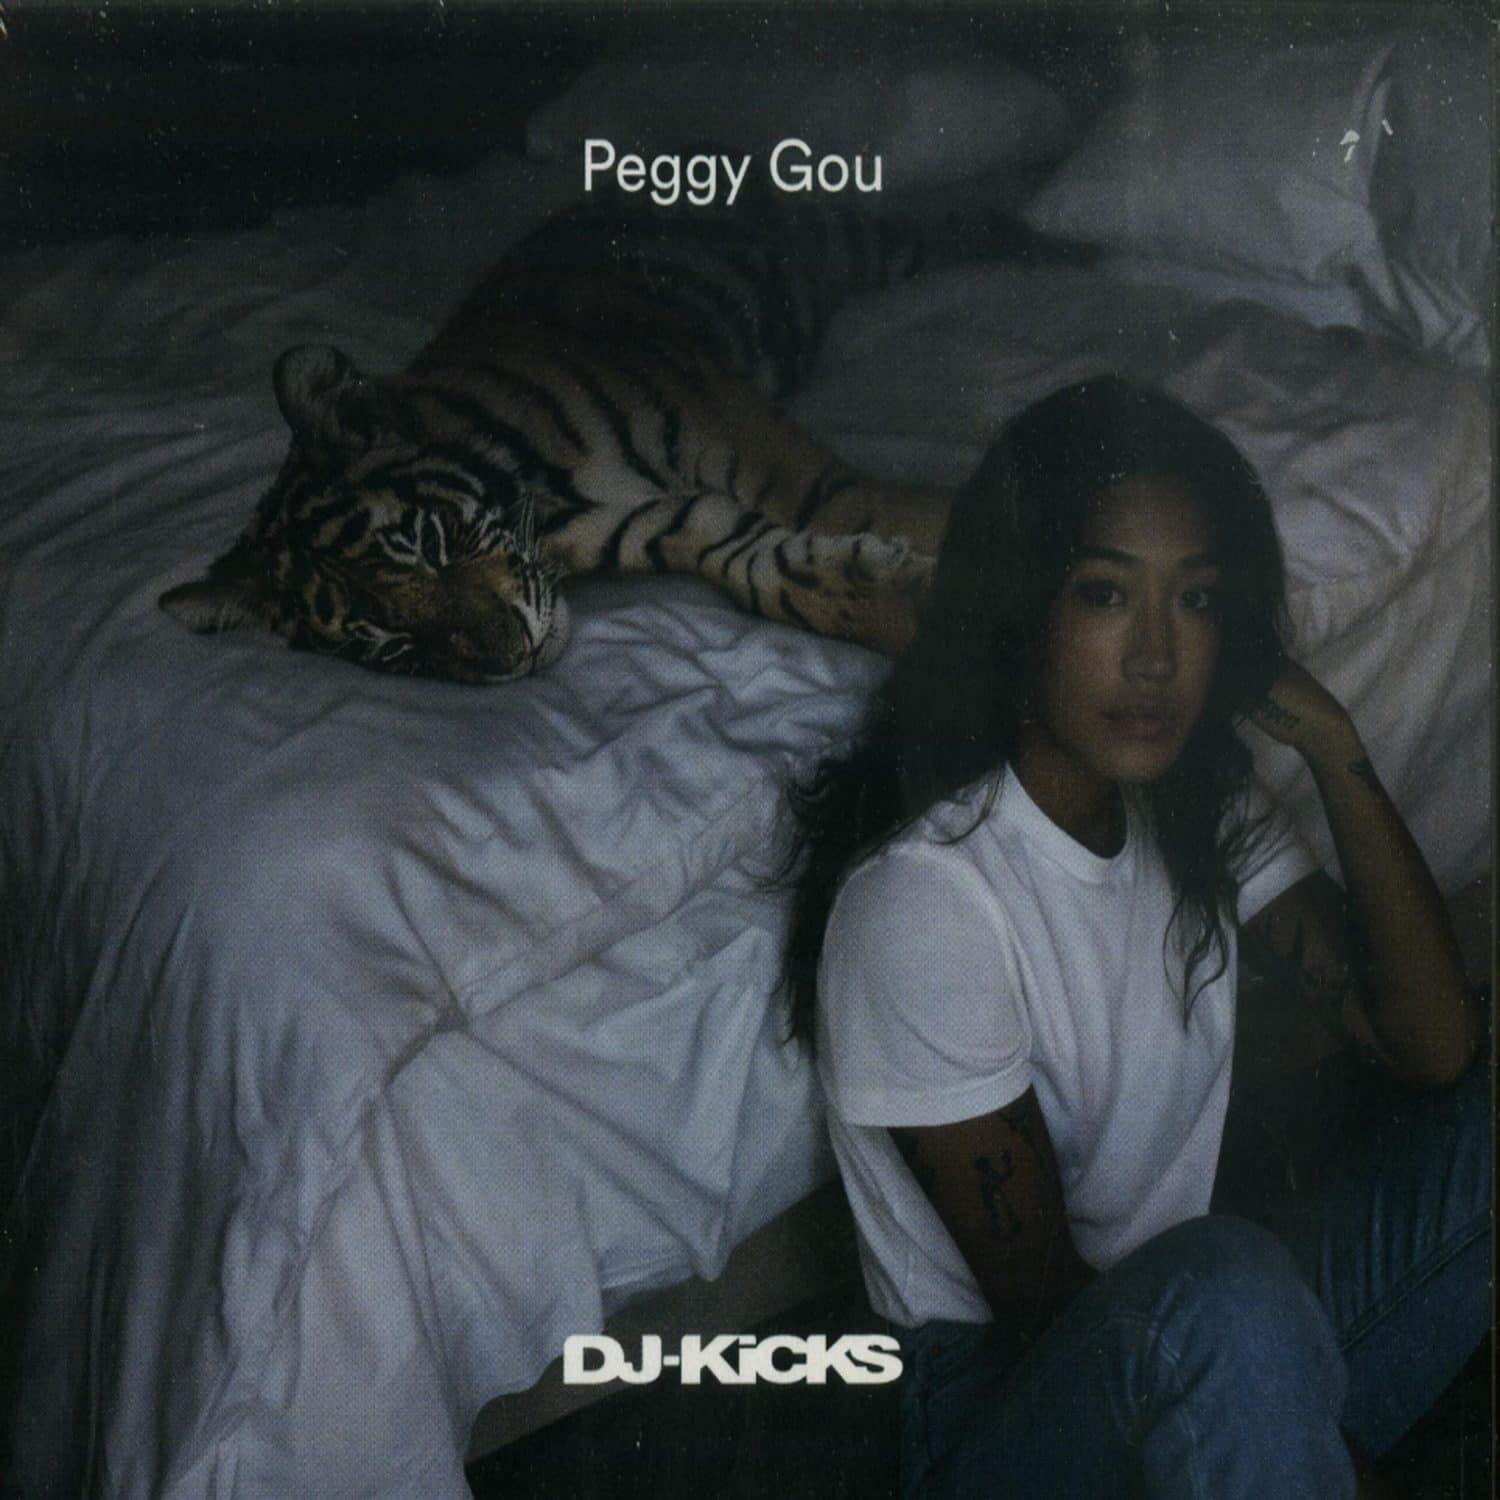 Peggy Gou - DJ-KICKS 